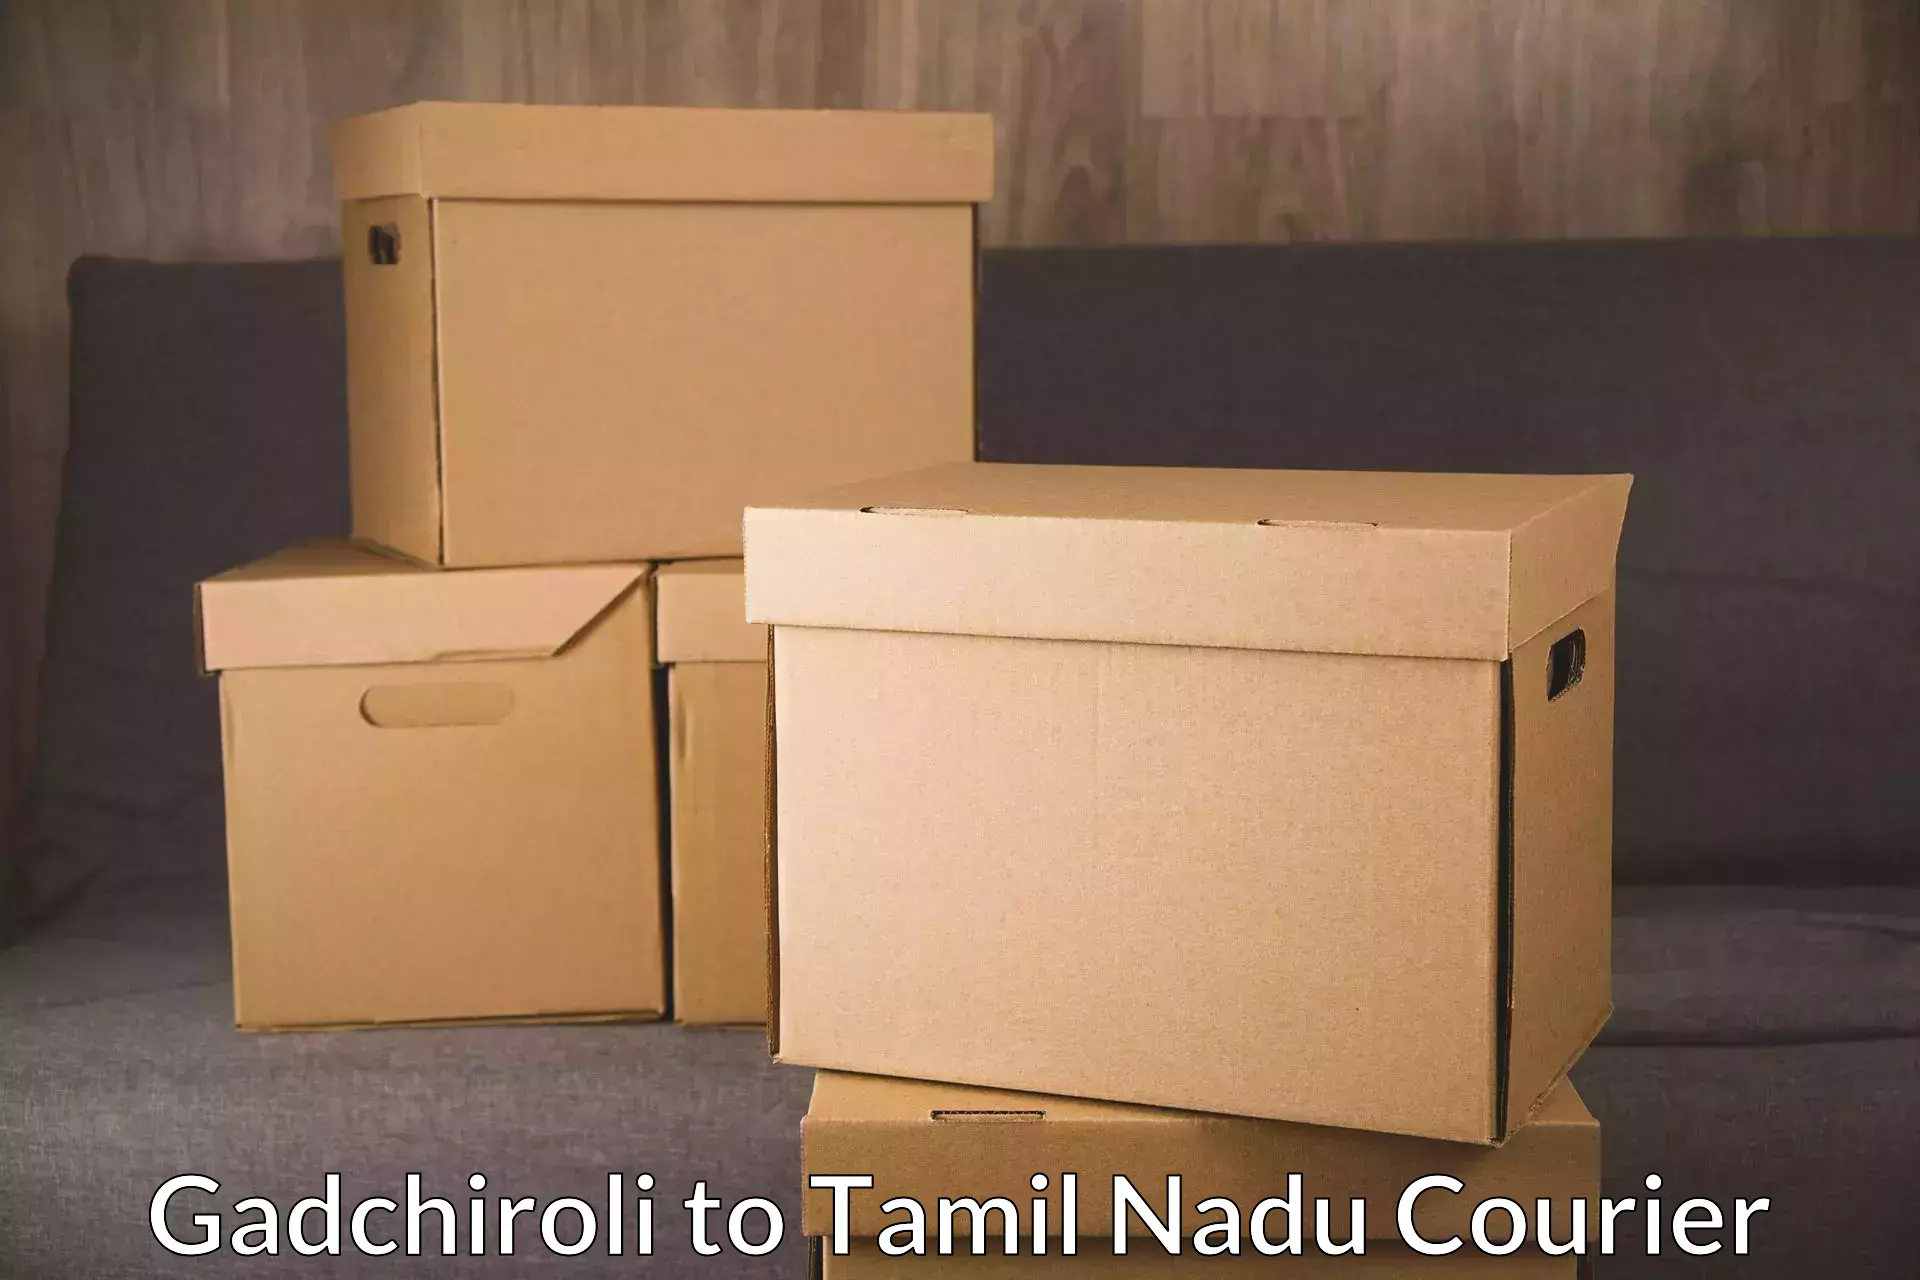 Courier membership Gadchiroli to Tamil Nadu